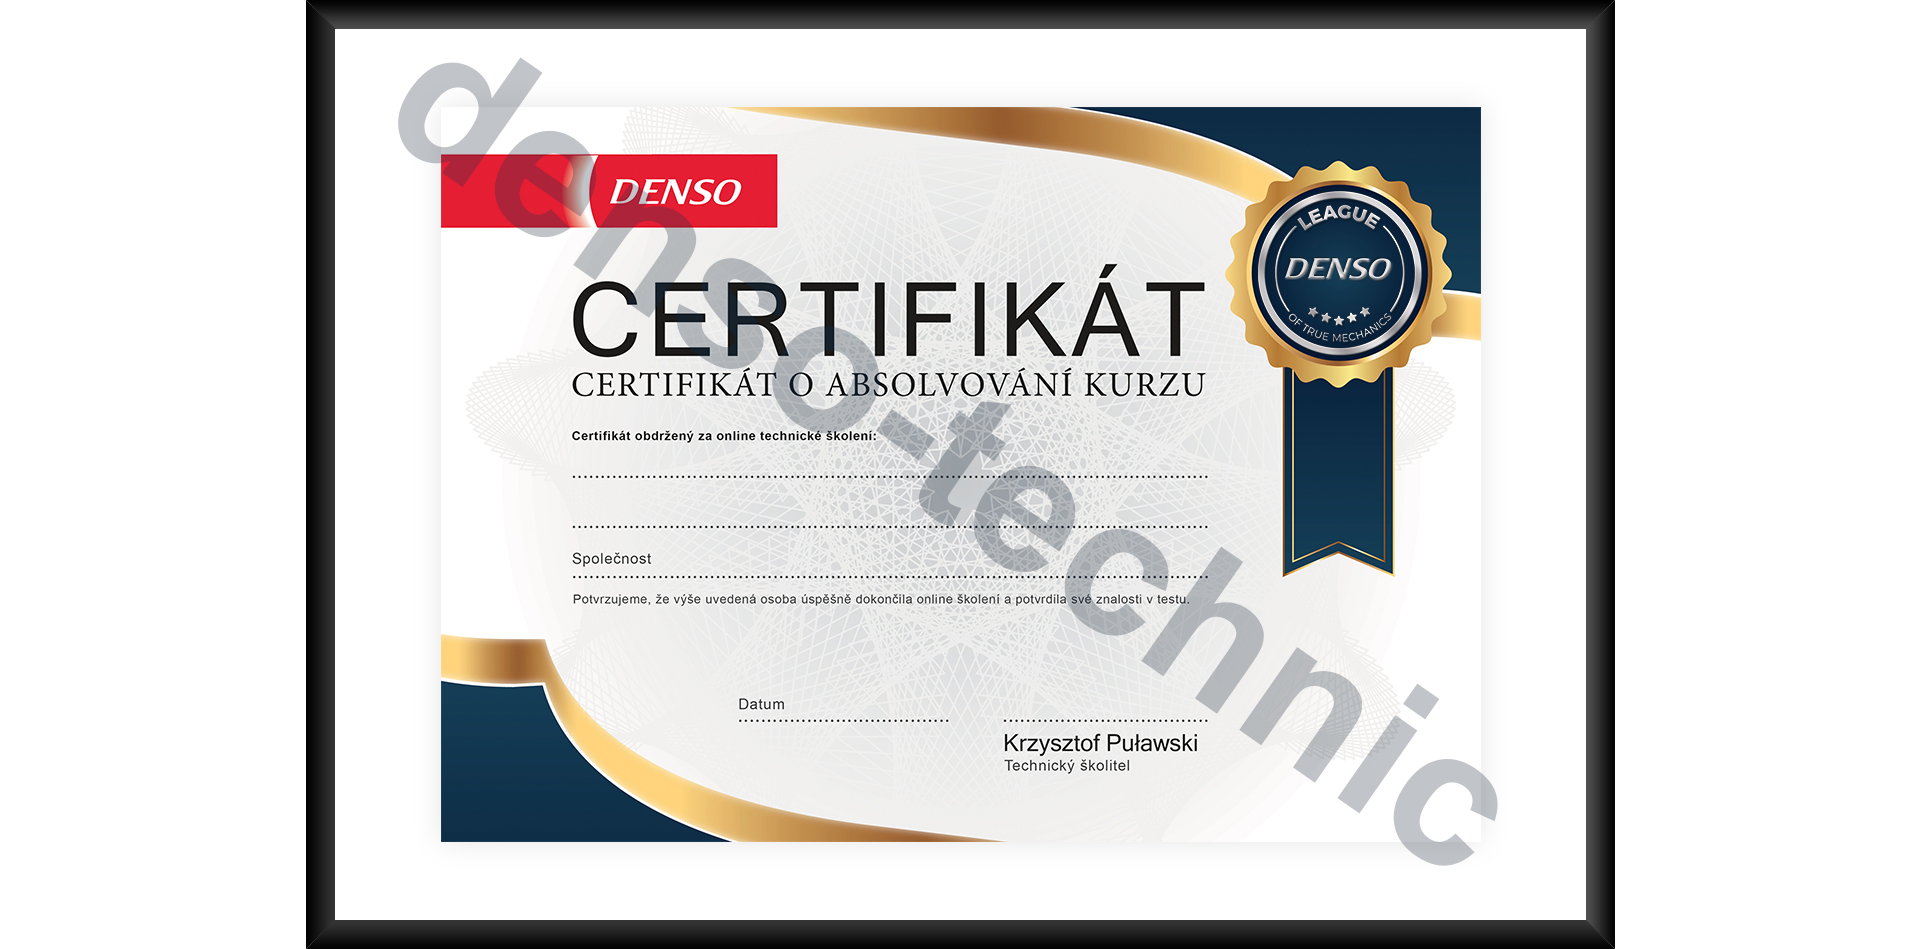 DENSO - Certifikát